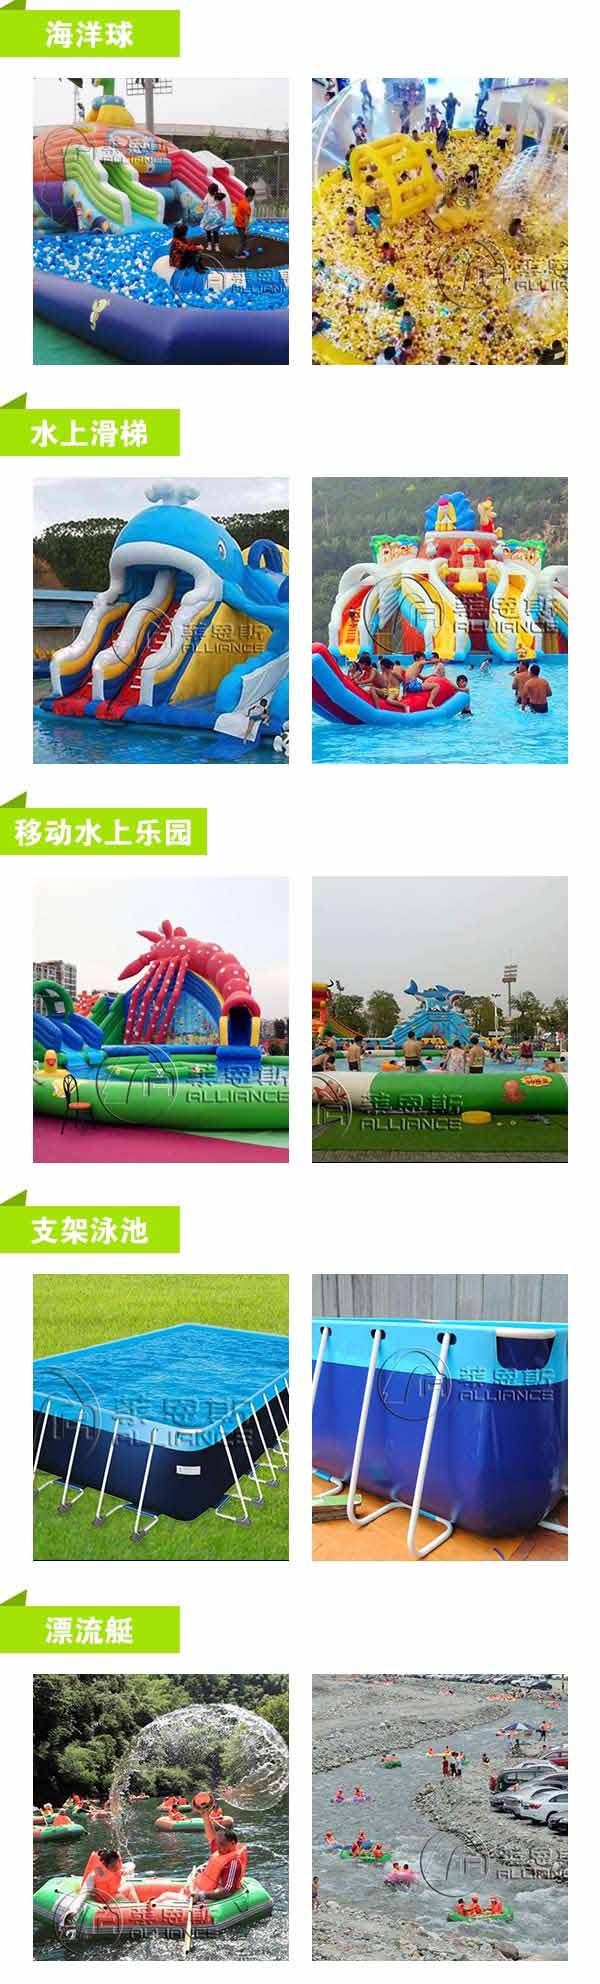 广州充气水乐园建造公司  莱恩斯游乐  广州充气水乐园 4